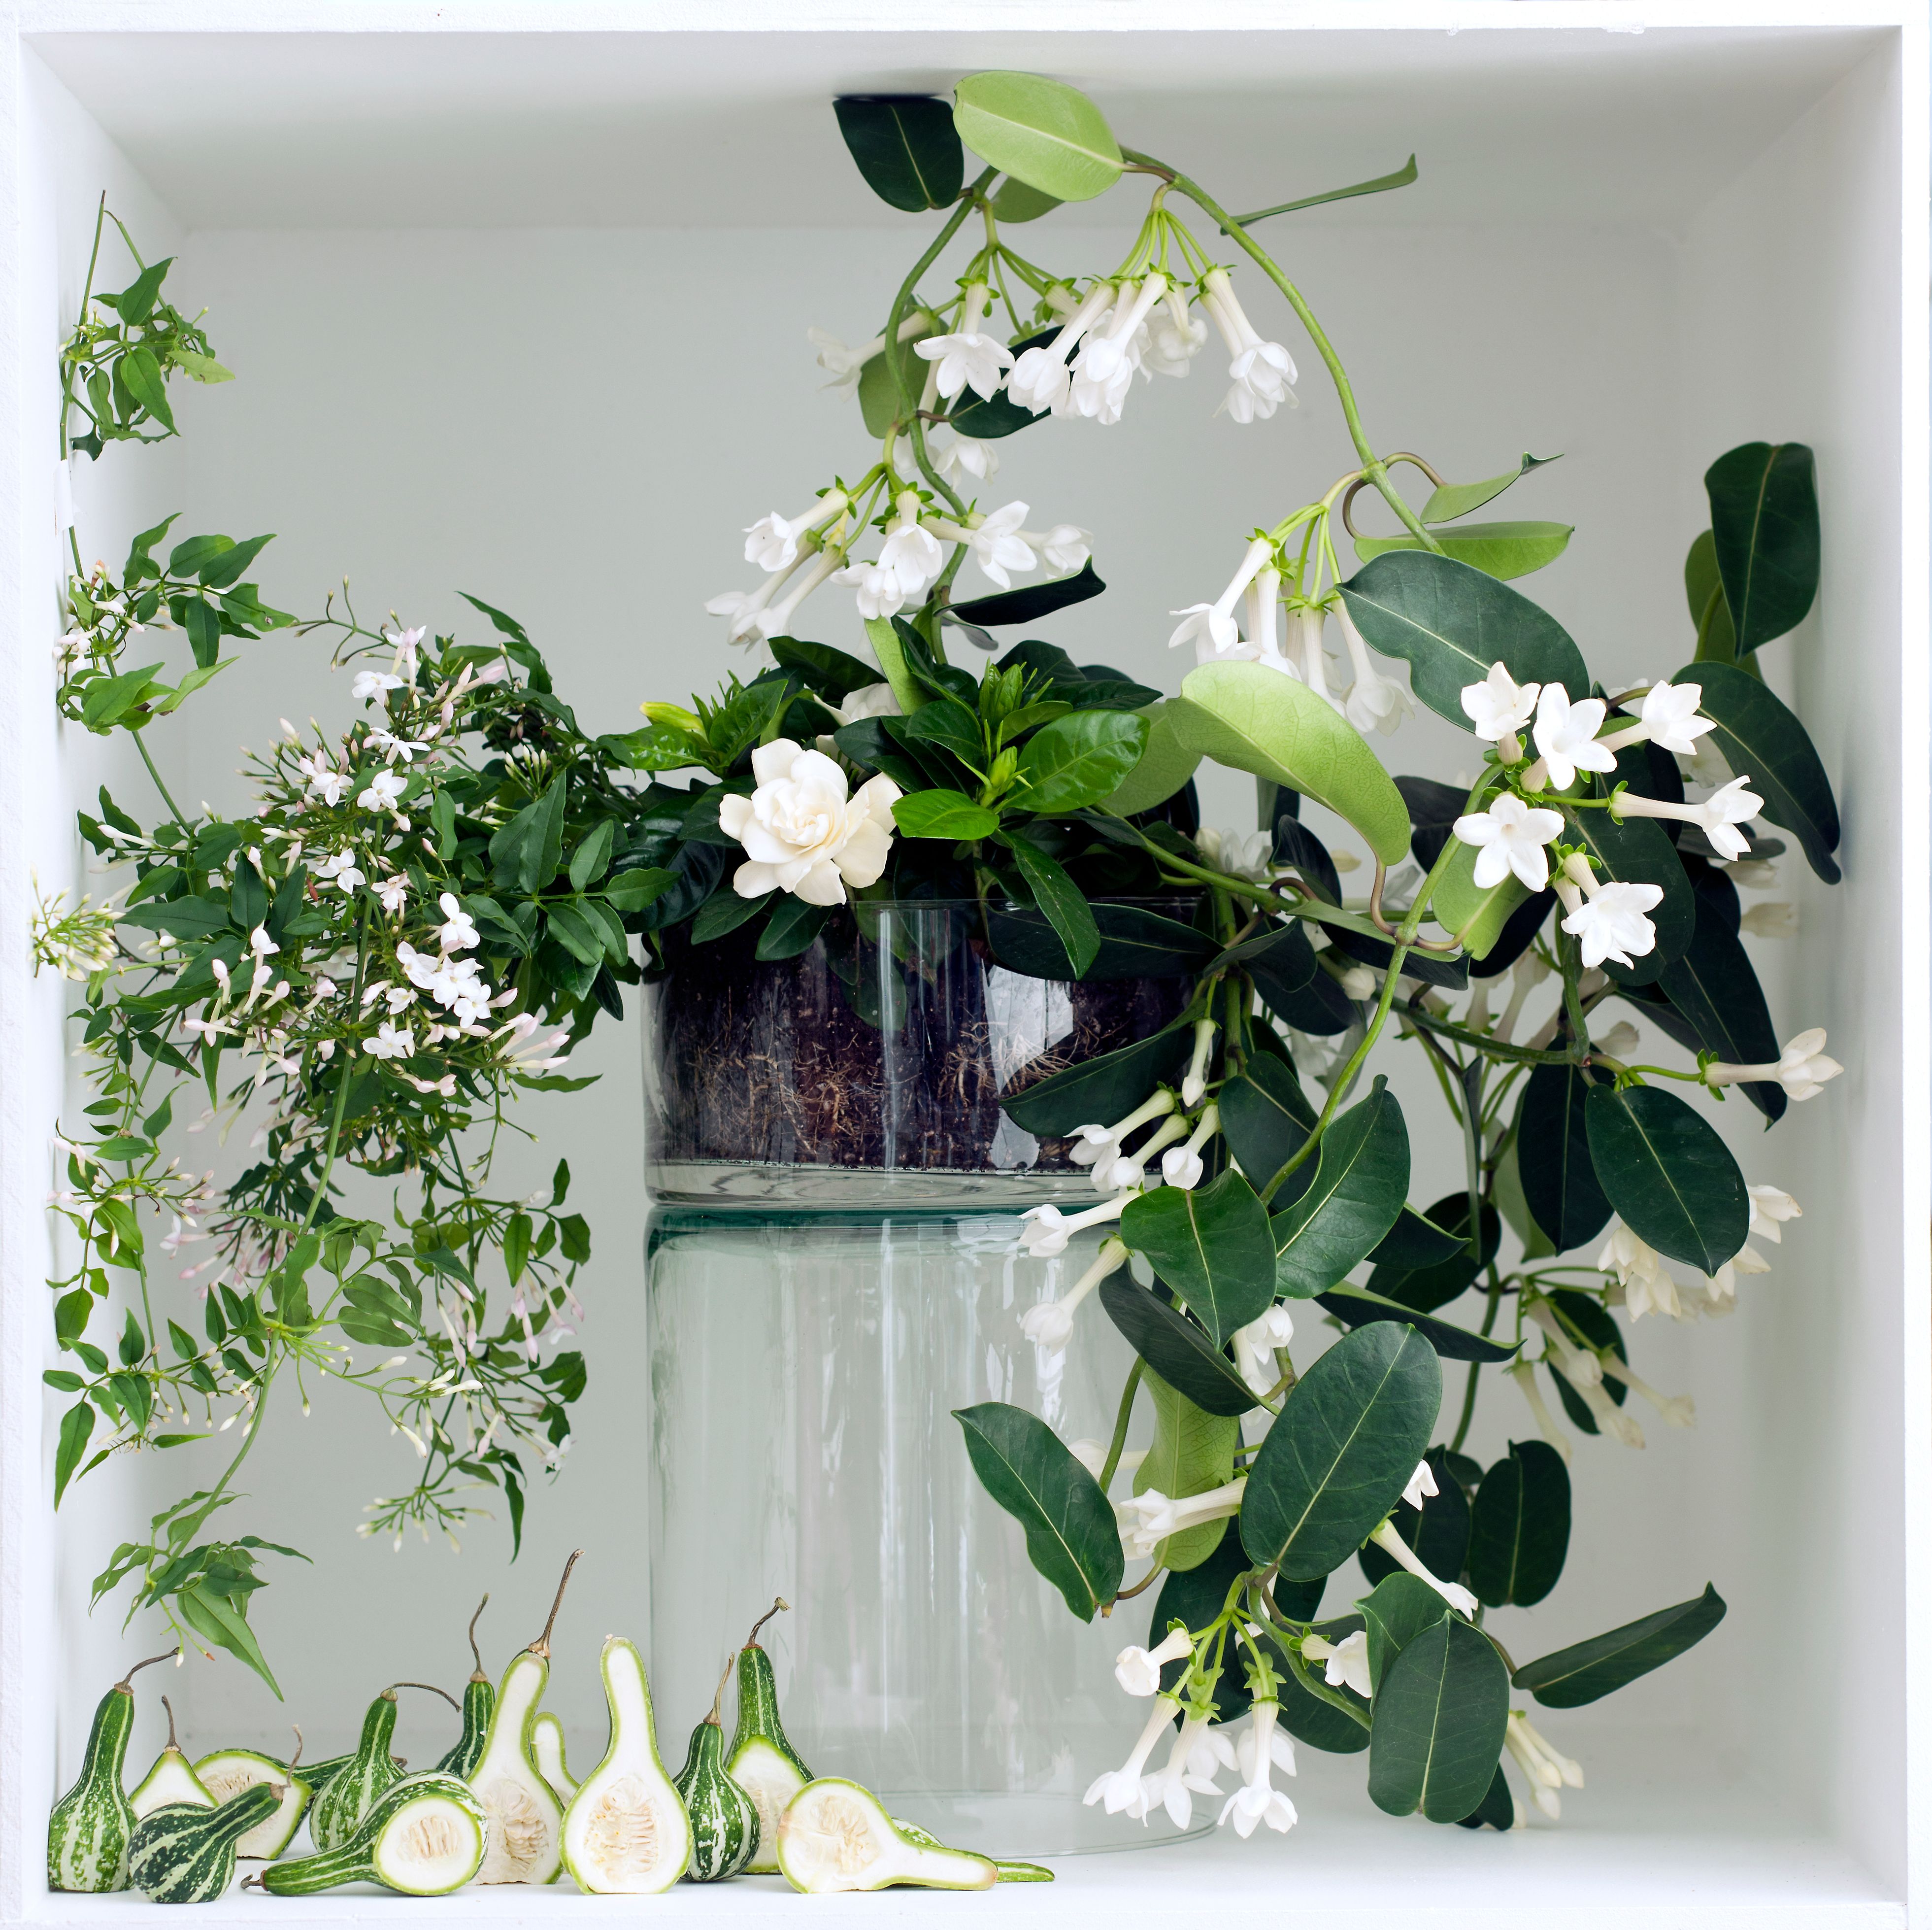 Plantes à fleurs blanches : Comment les choisir et les entretenir